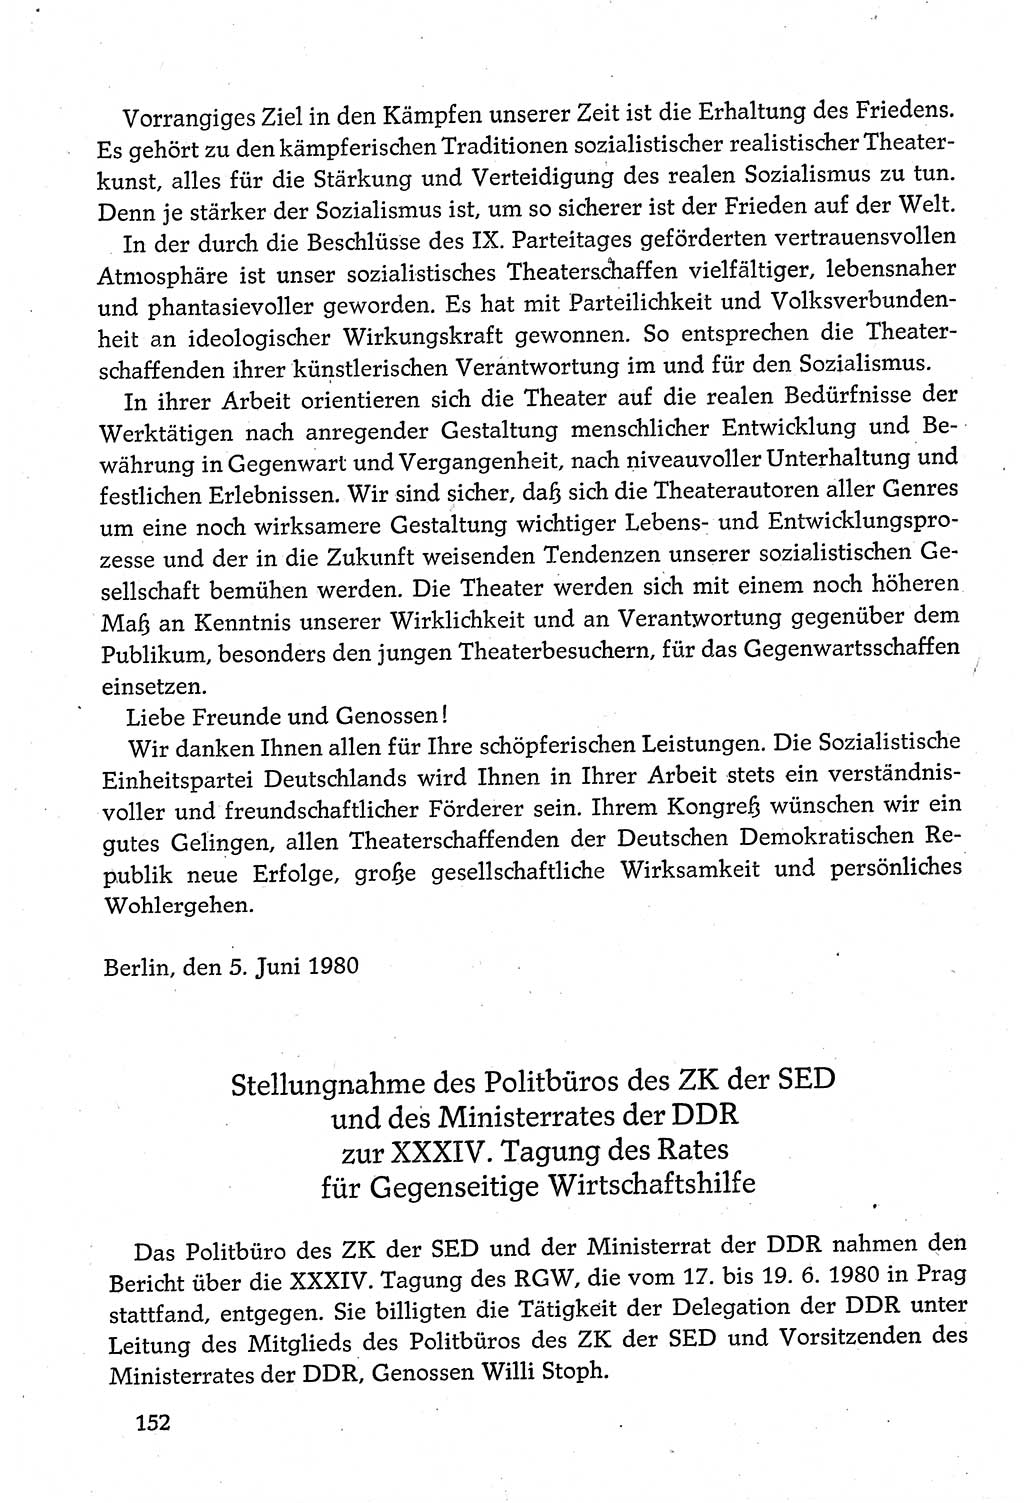 Dokumente der Sozialistischen Einheitspartei Deutschlands (SED) [Deutsche Demokratische Republik (DDR)] 1980-1981, Seite 152 (Dok. SED DDR 1980-1981, S. 152)